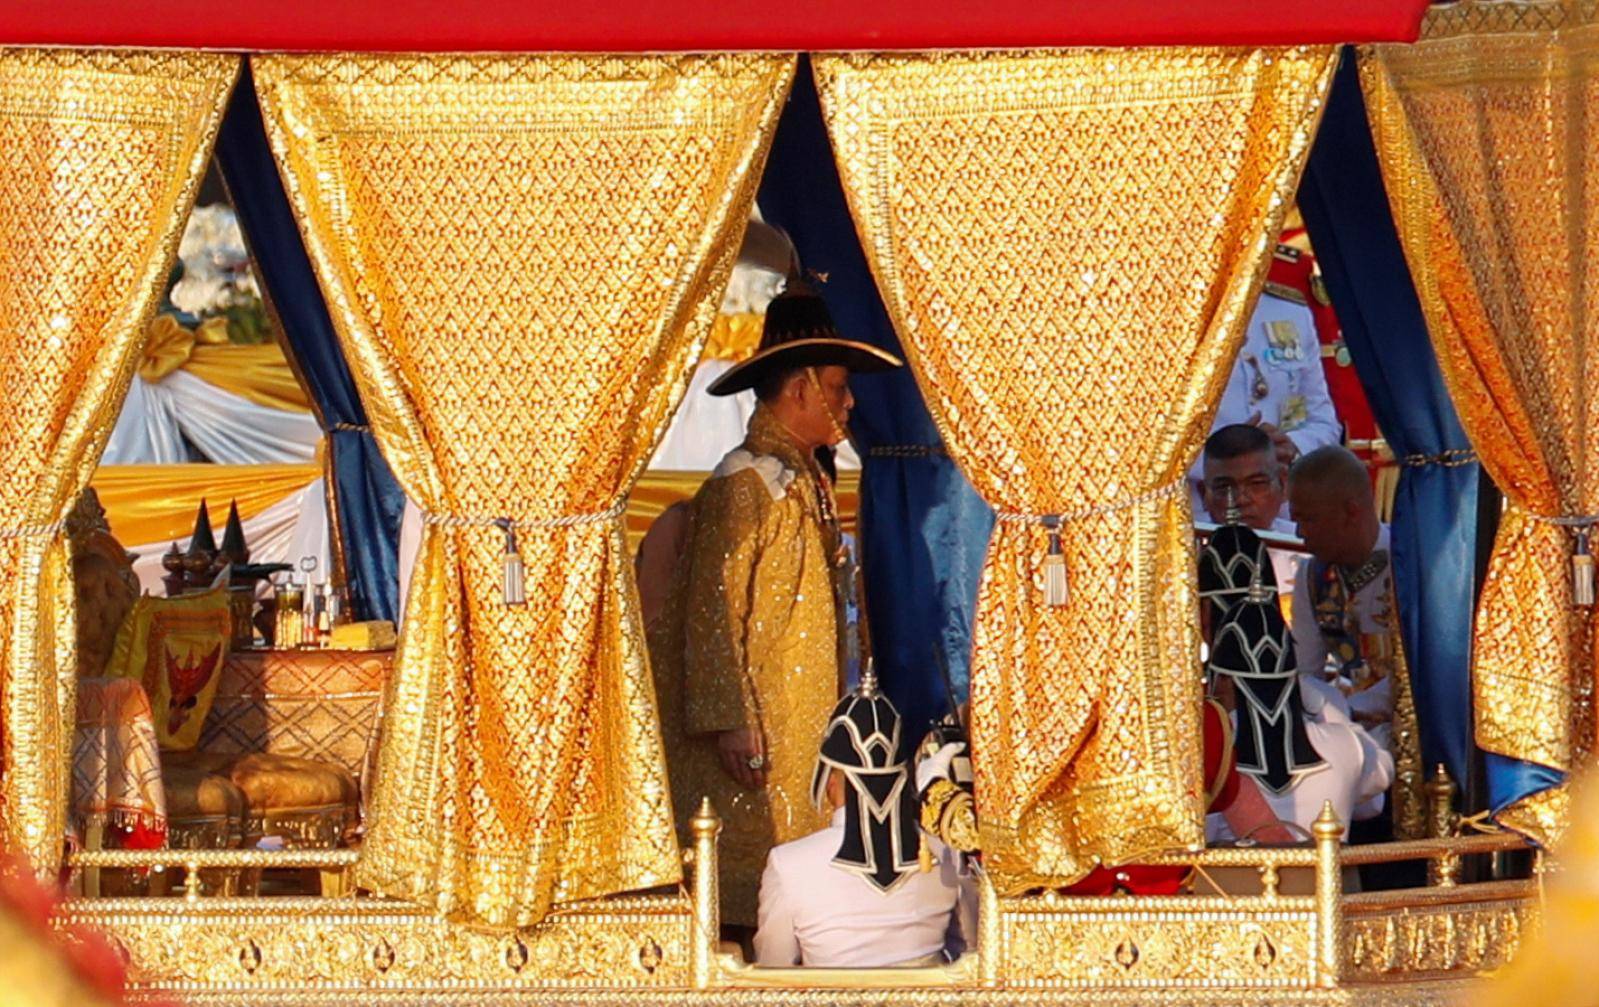 Thailand's King Maha Vajiralongkorn takes part in a royal barge river procession along the Chao Praya river in Bangkok